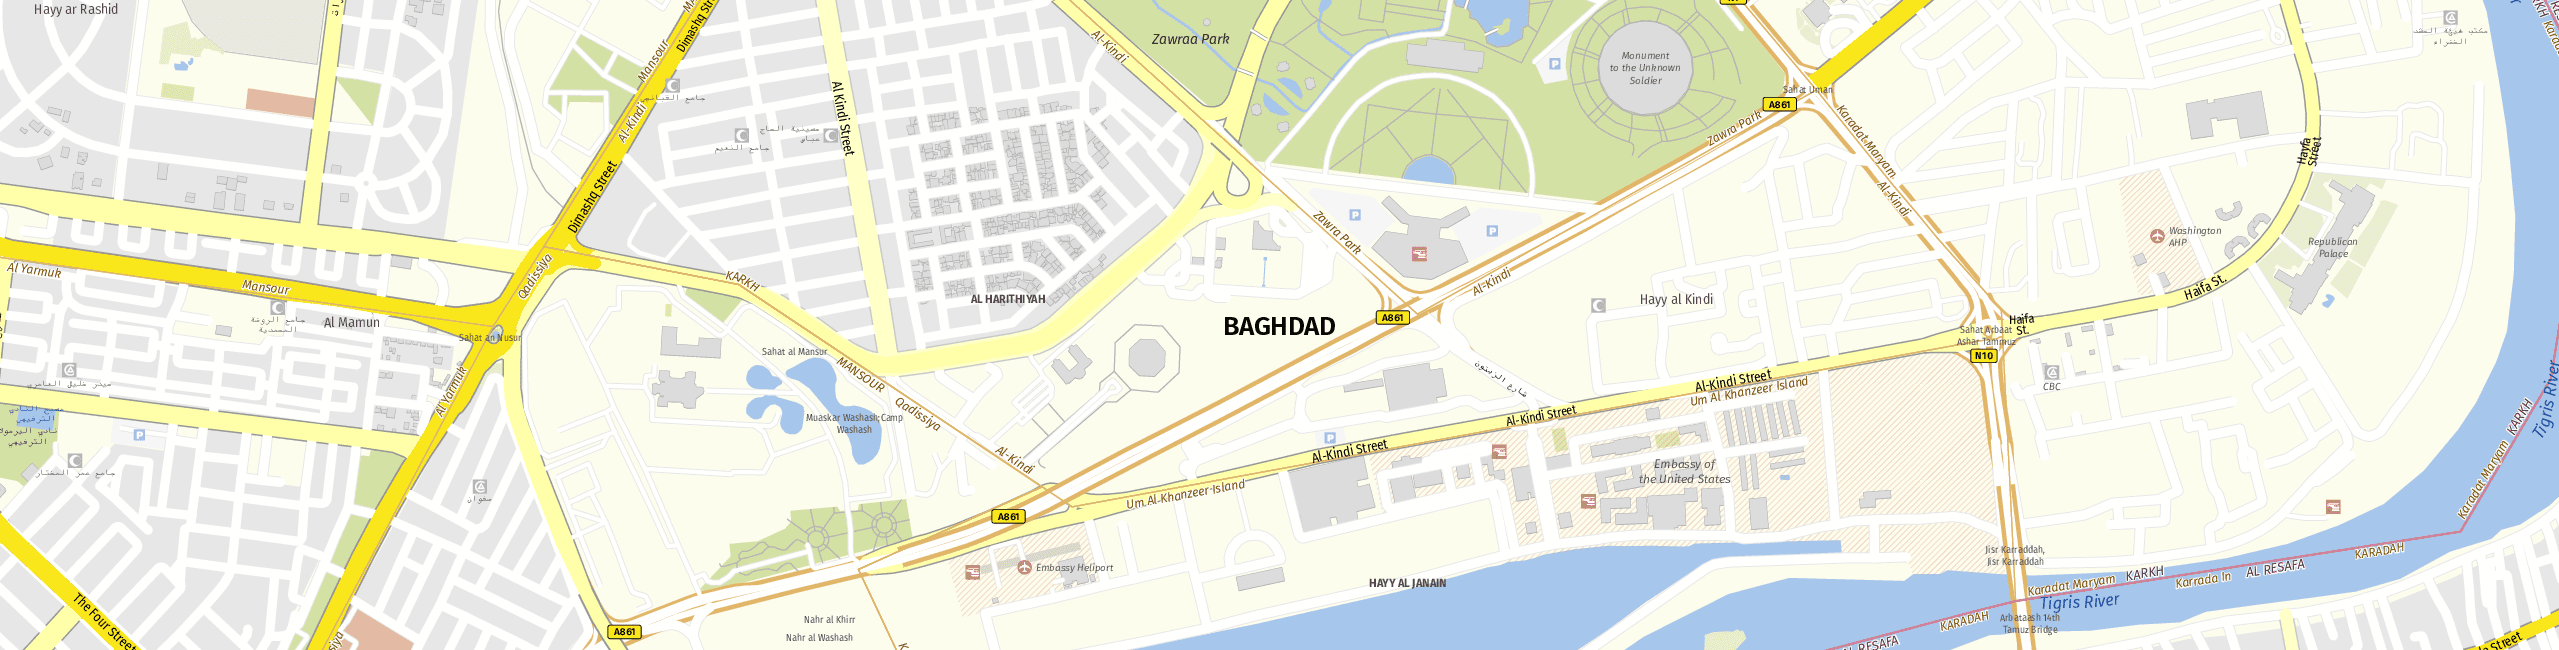 Stadtplan Bagdad zum Downloaden.